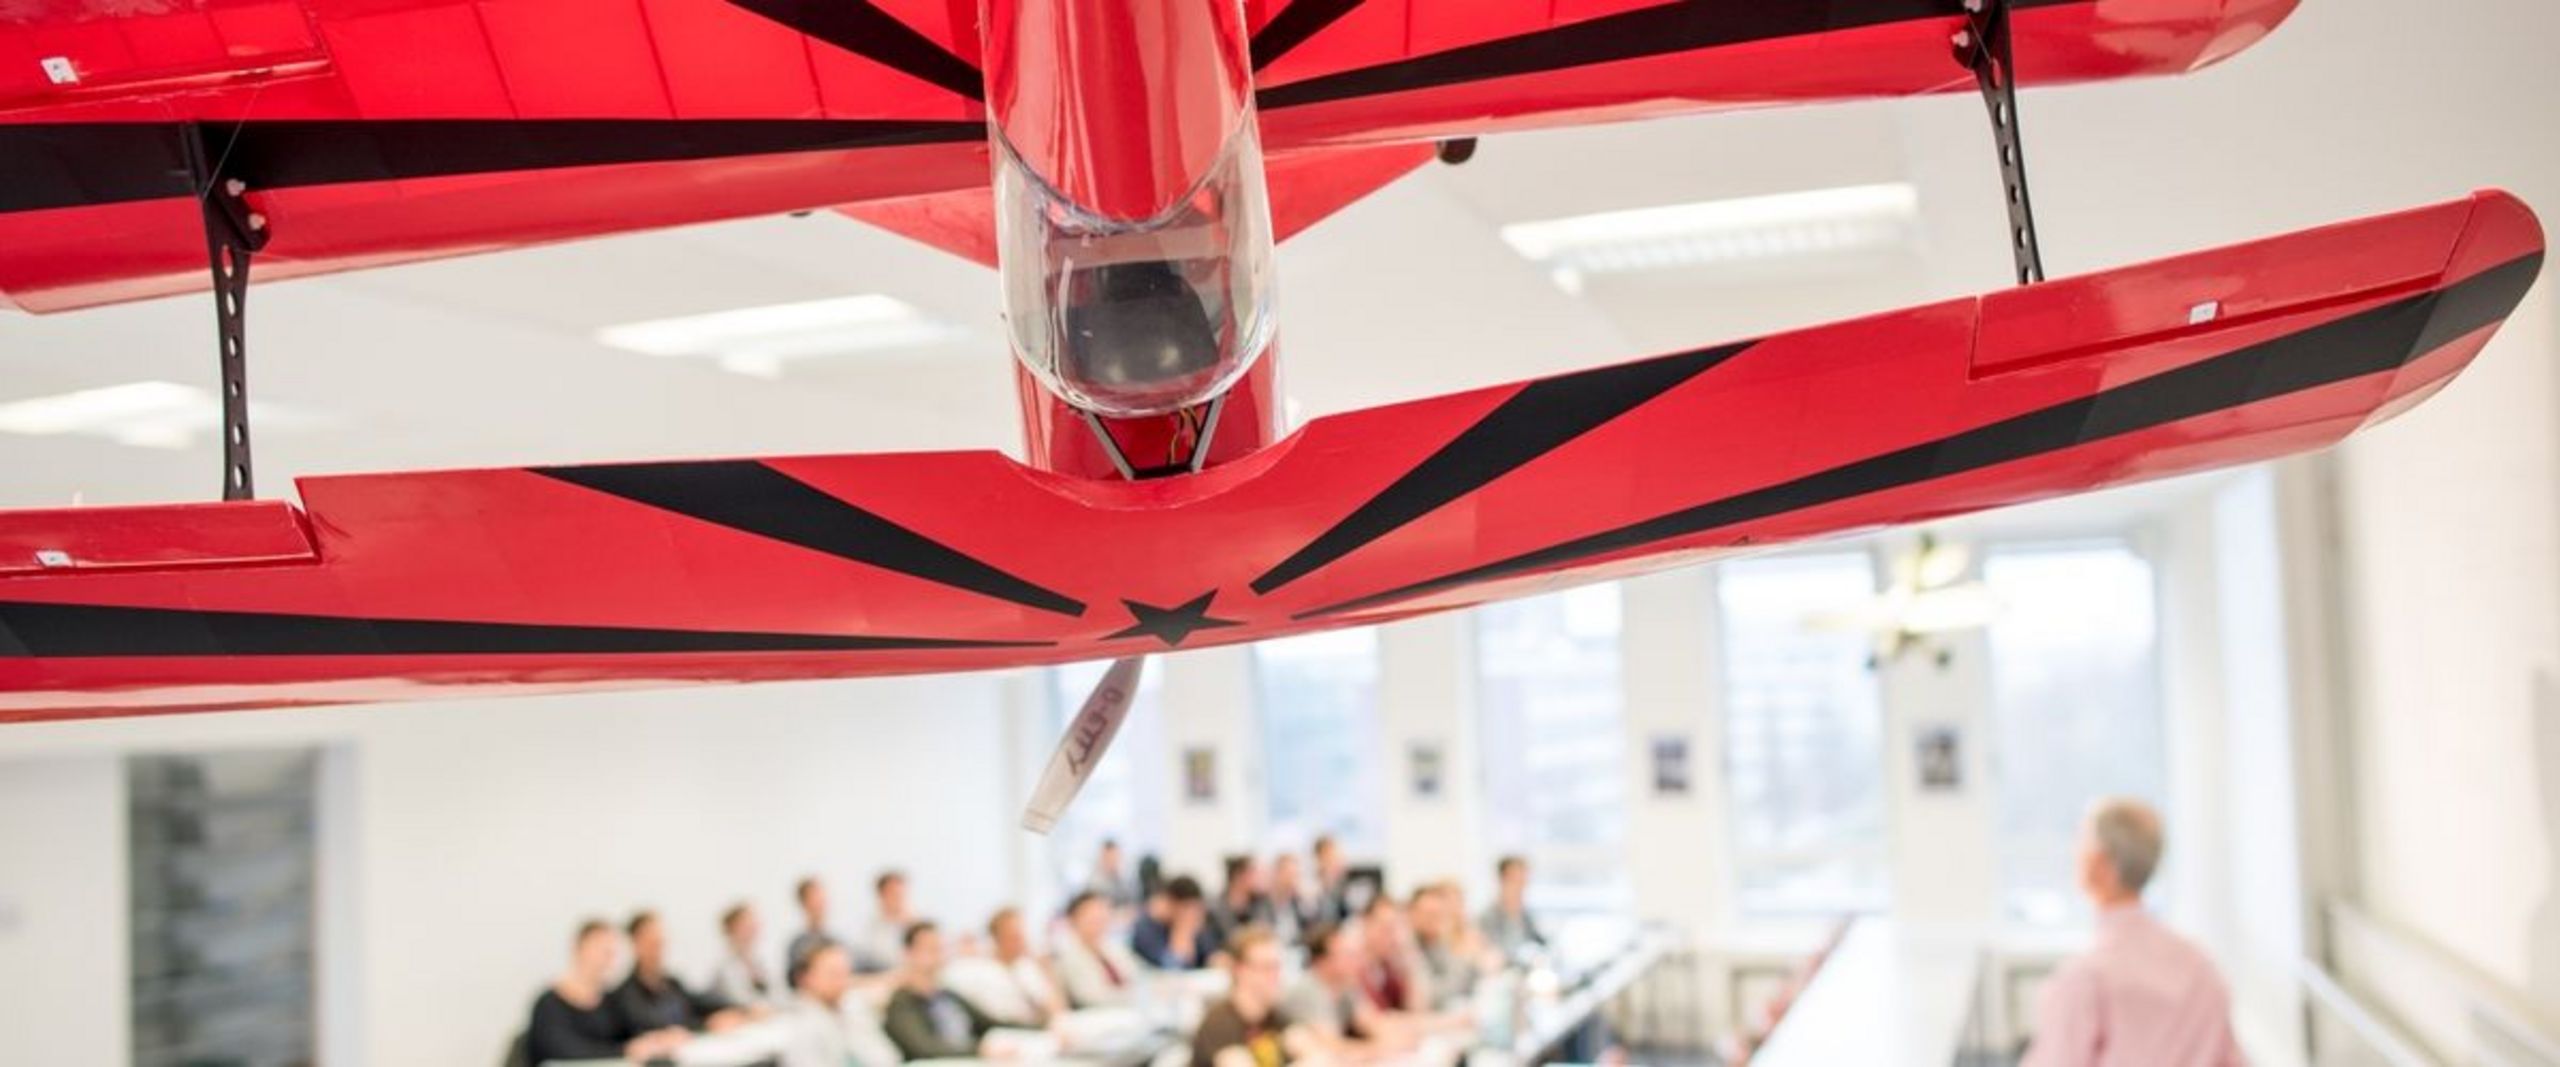 Auf dem Bild ist ein großes rotes Modellflugzeug zu sehen, das von der Decke eine Vorlesungssaales hängt. Im Hintergrund ist eine Grube Studierender und ein Lehrender im Seminarraum zu sehen.